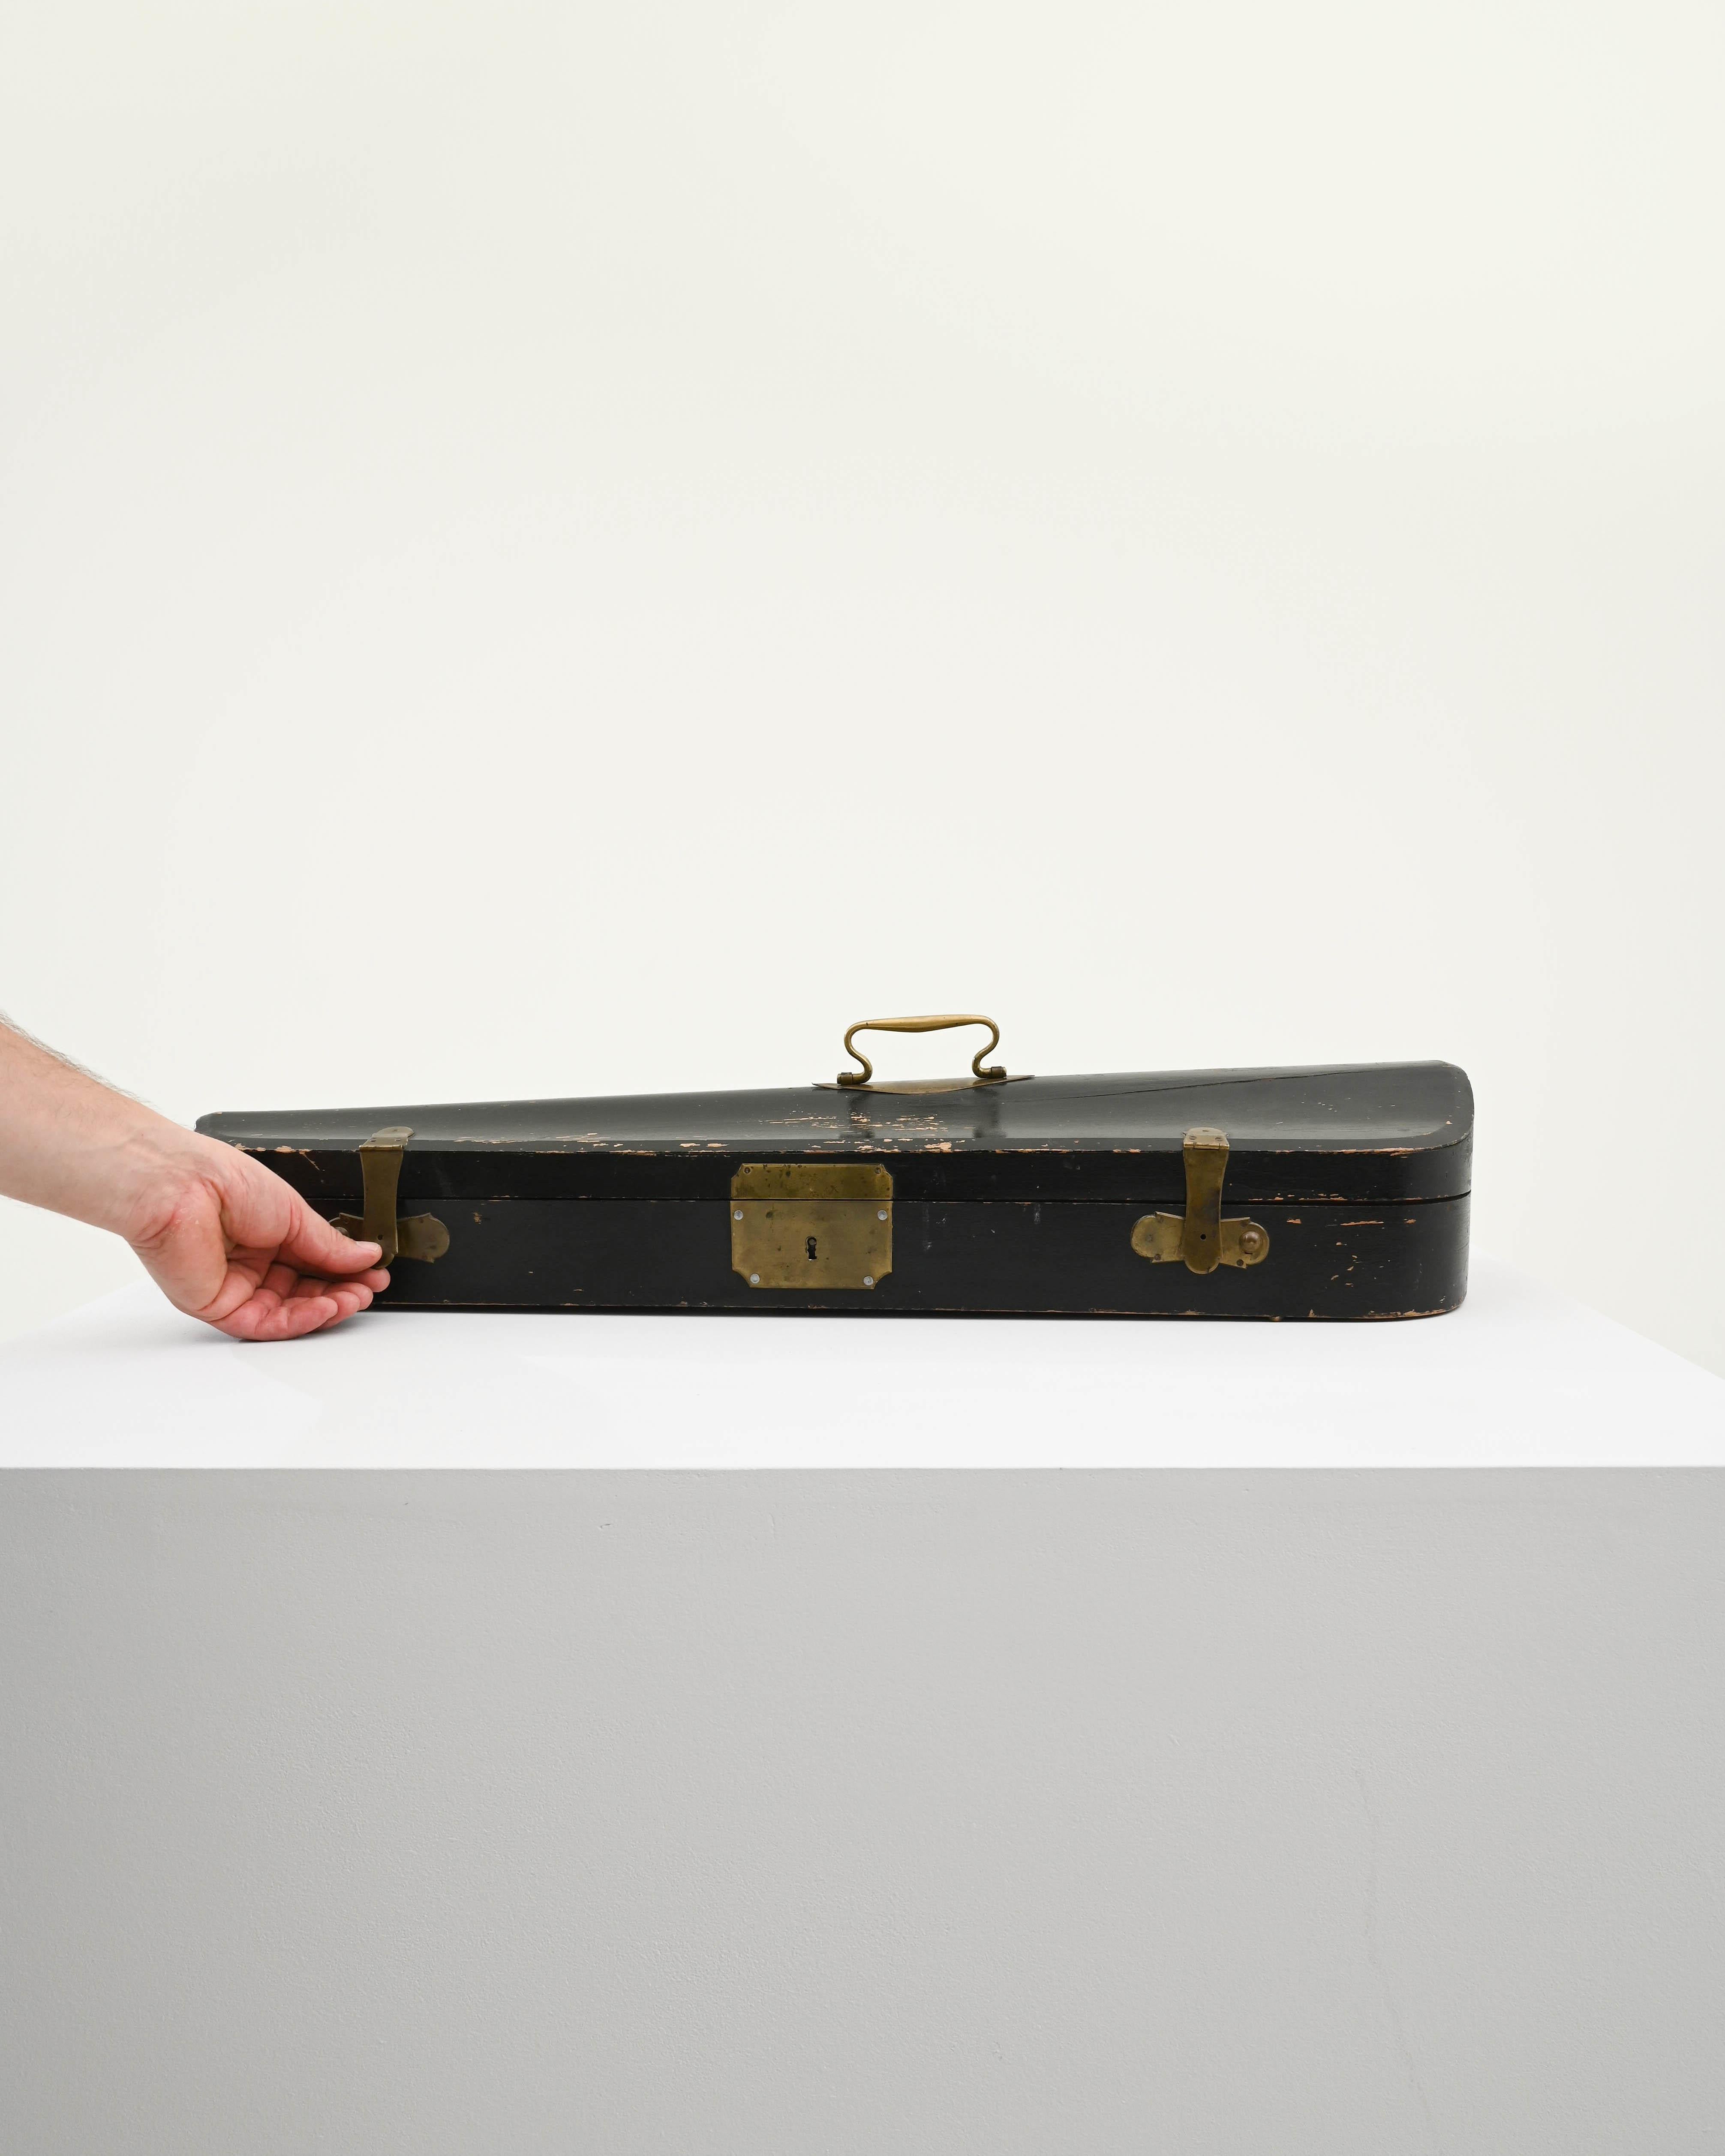 Dieser im 20. Jahrhundert in Europa hergestellte Holzkoffer diente ursprünglich zur Aufbewahrung eines Musikinstruments - die charakteristische Form erinnert an eine Geige. Das Holz wurde in einem schlichten schwarzen Farbton lackiert; elegante